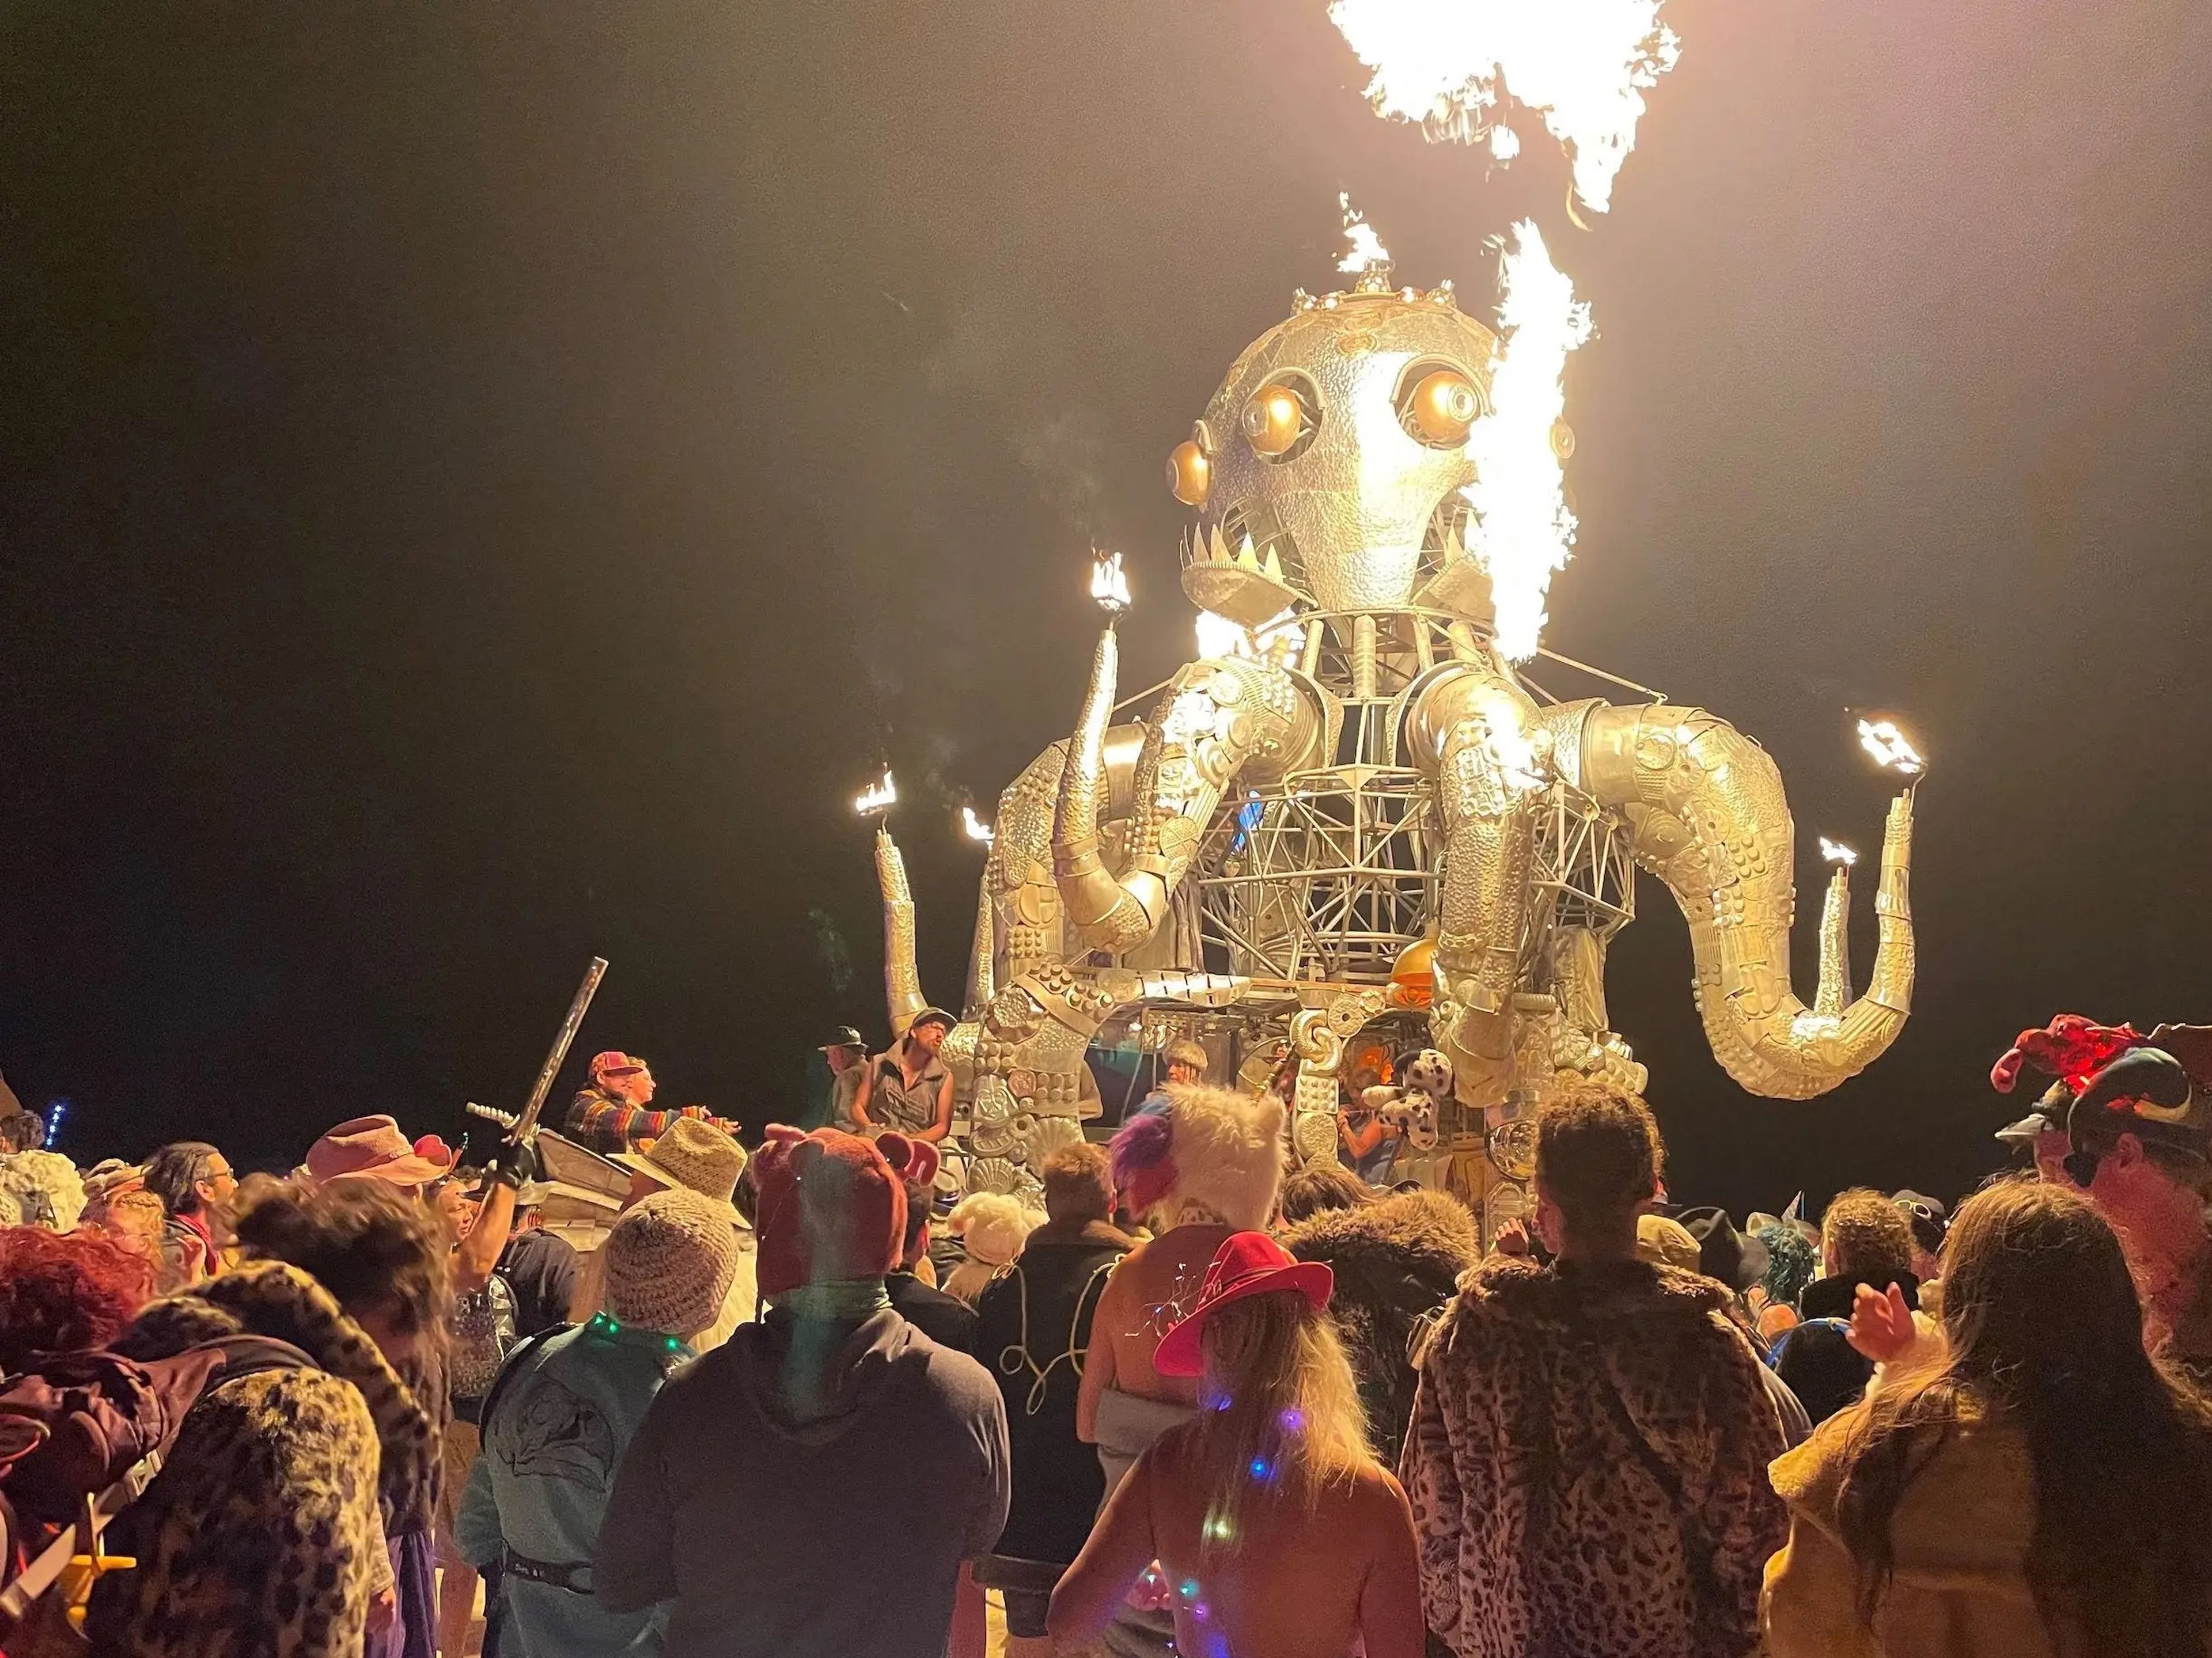 El Burning Man fue estupendo y sin complicaciones, hasta que empezó a llover.